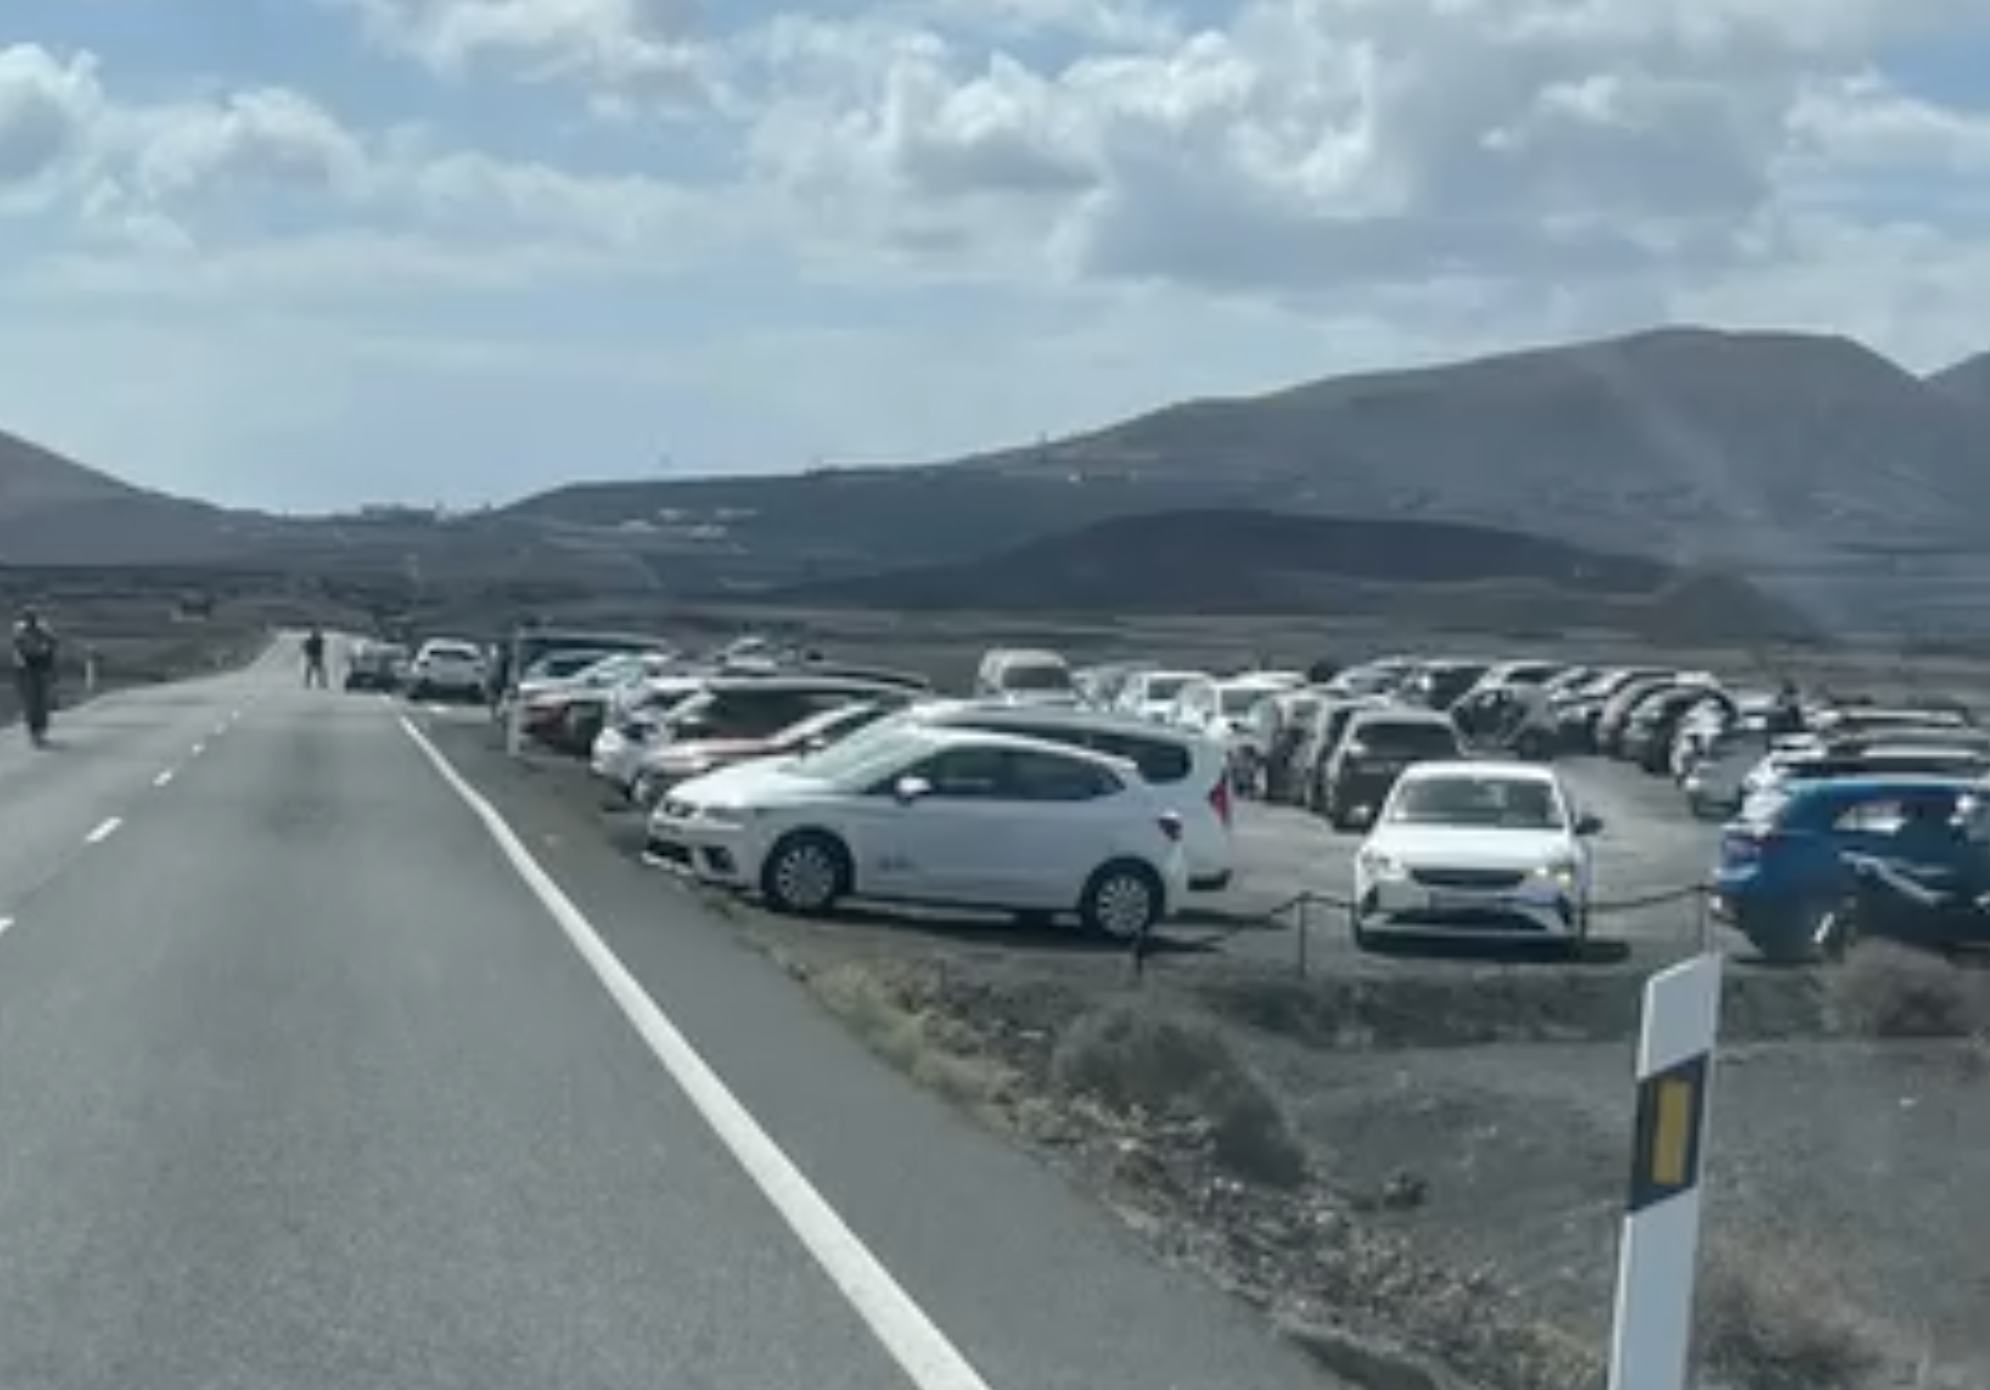 Denuncia la masificación en el Volcán de El Cuervo: "La isla está muriendo de éxito"